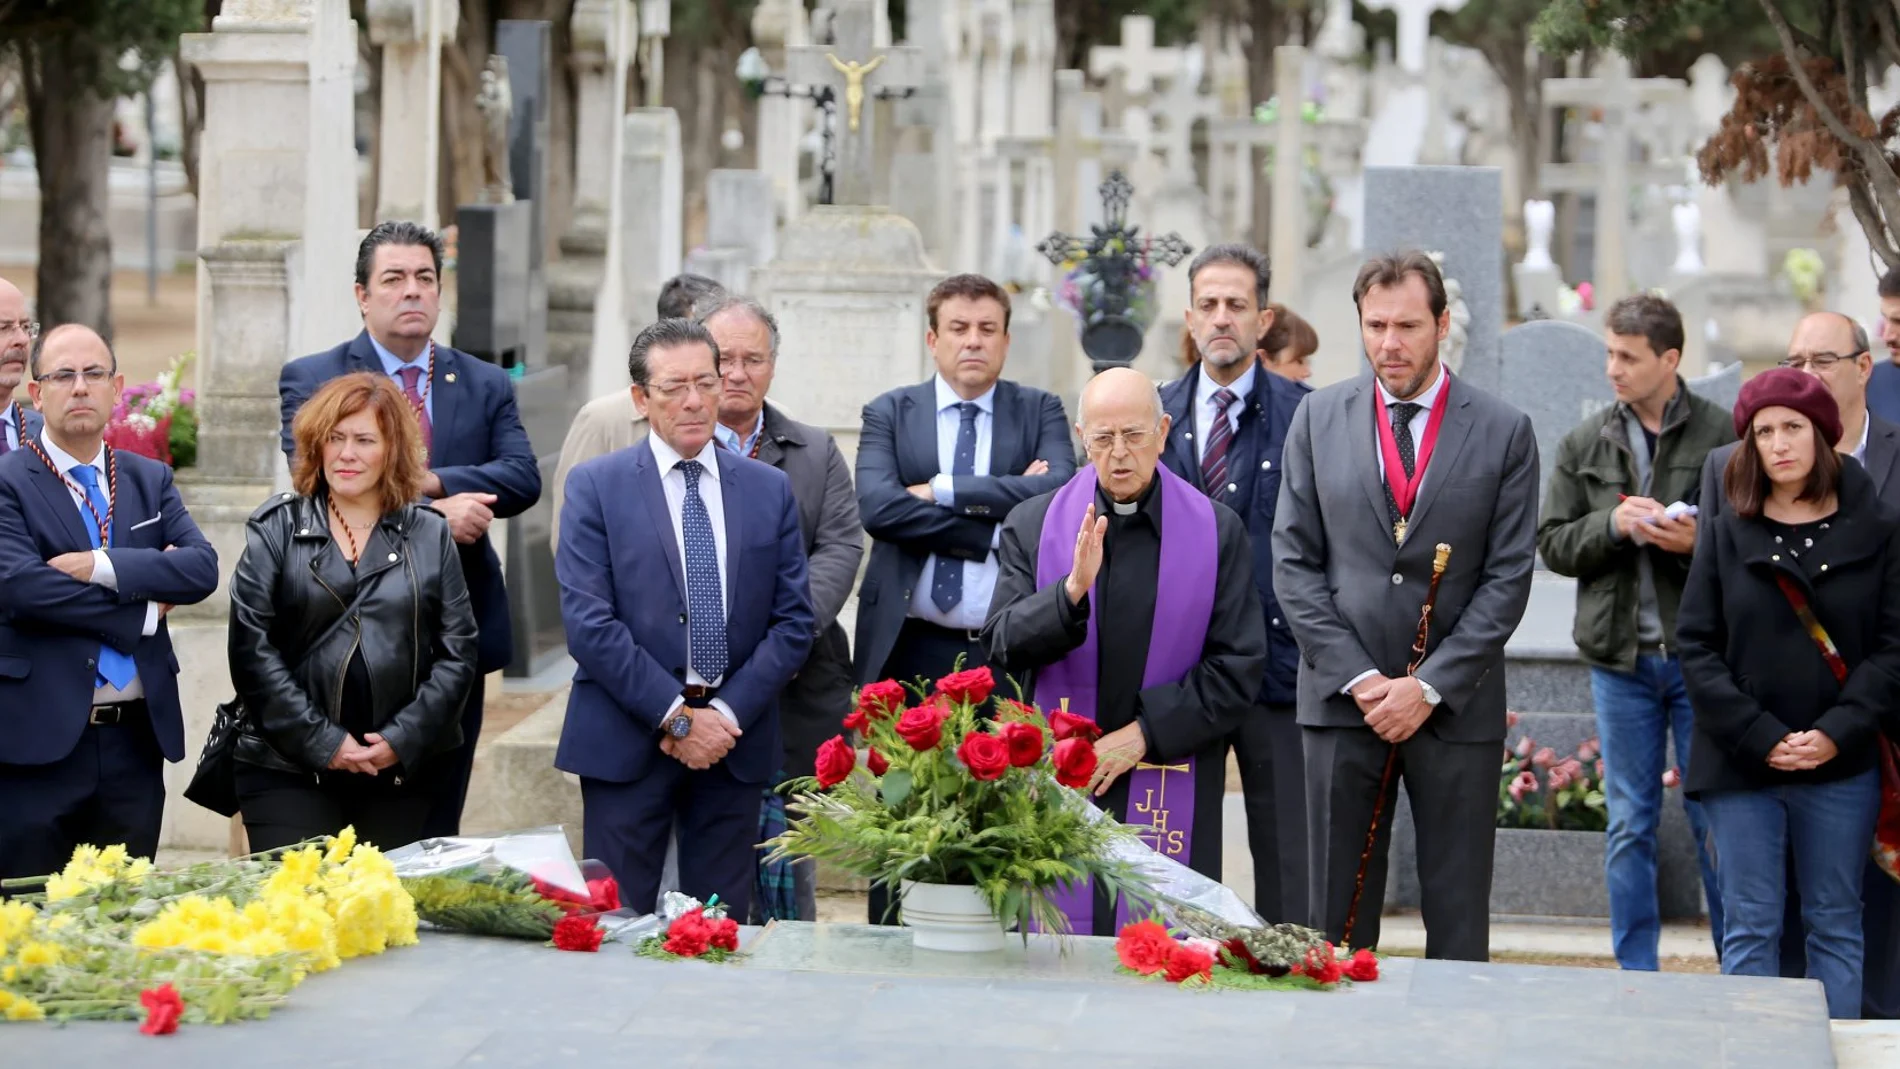 El alcalde de Valladolid, Óscar Puente, acompañado por el cardenal arzobispo de Valladolid, Ricardo Blázquez, y la corporación municipal, entre otros, asiste a la celebración del Día de Todos los Santos en el cementerio del Carmen